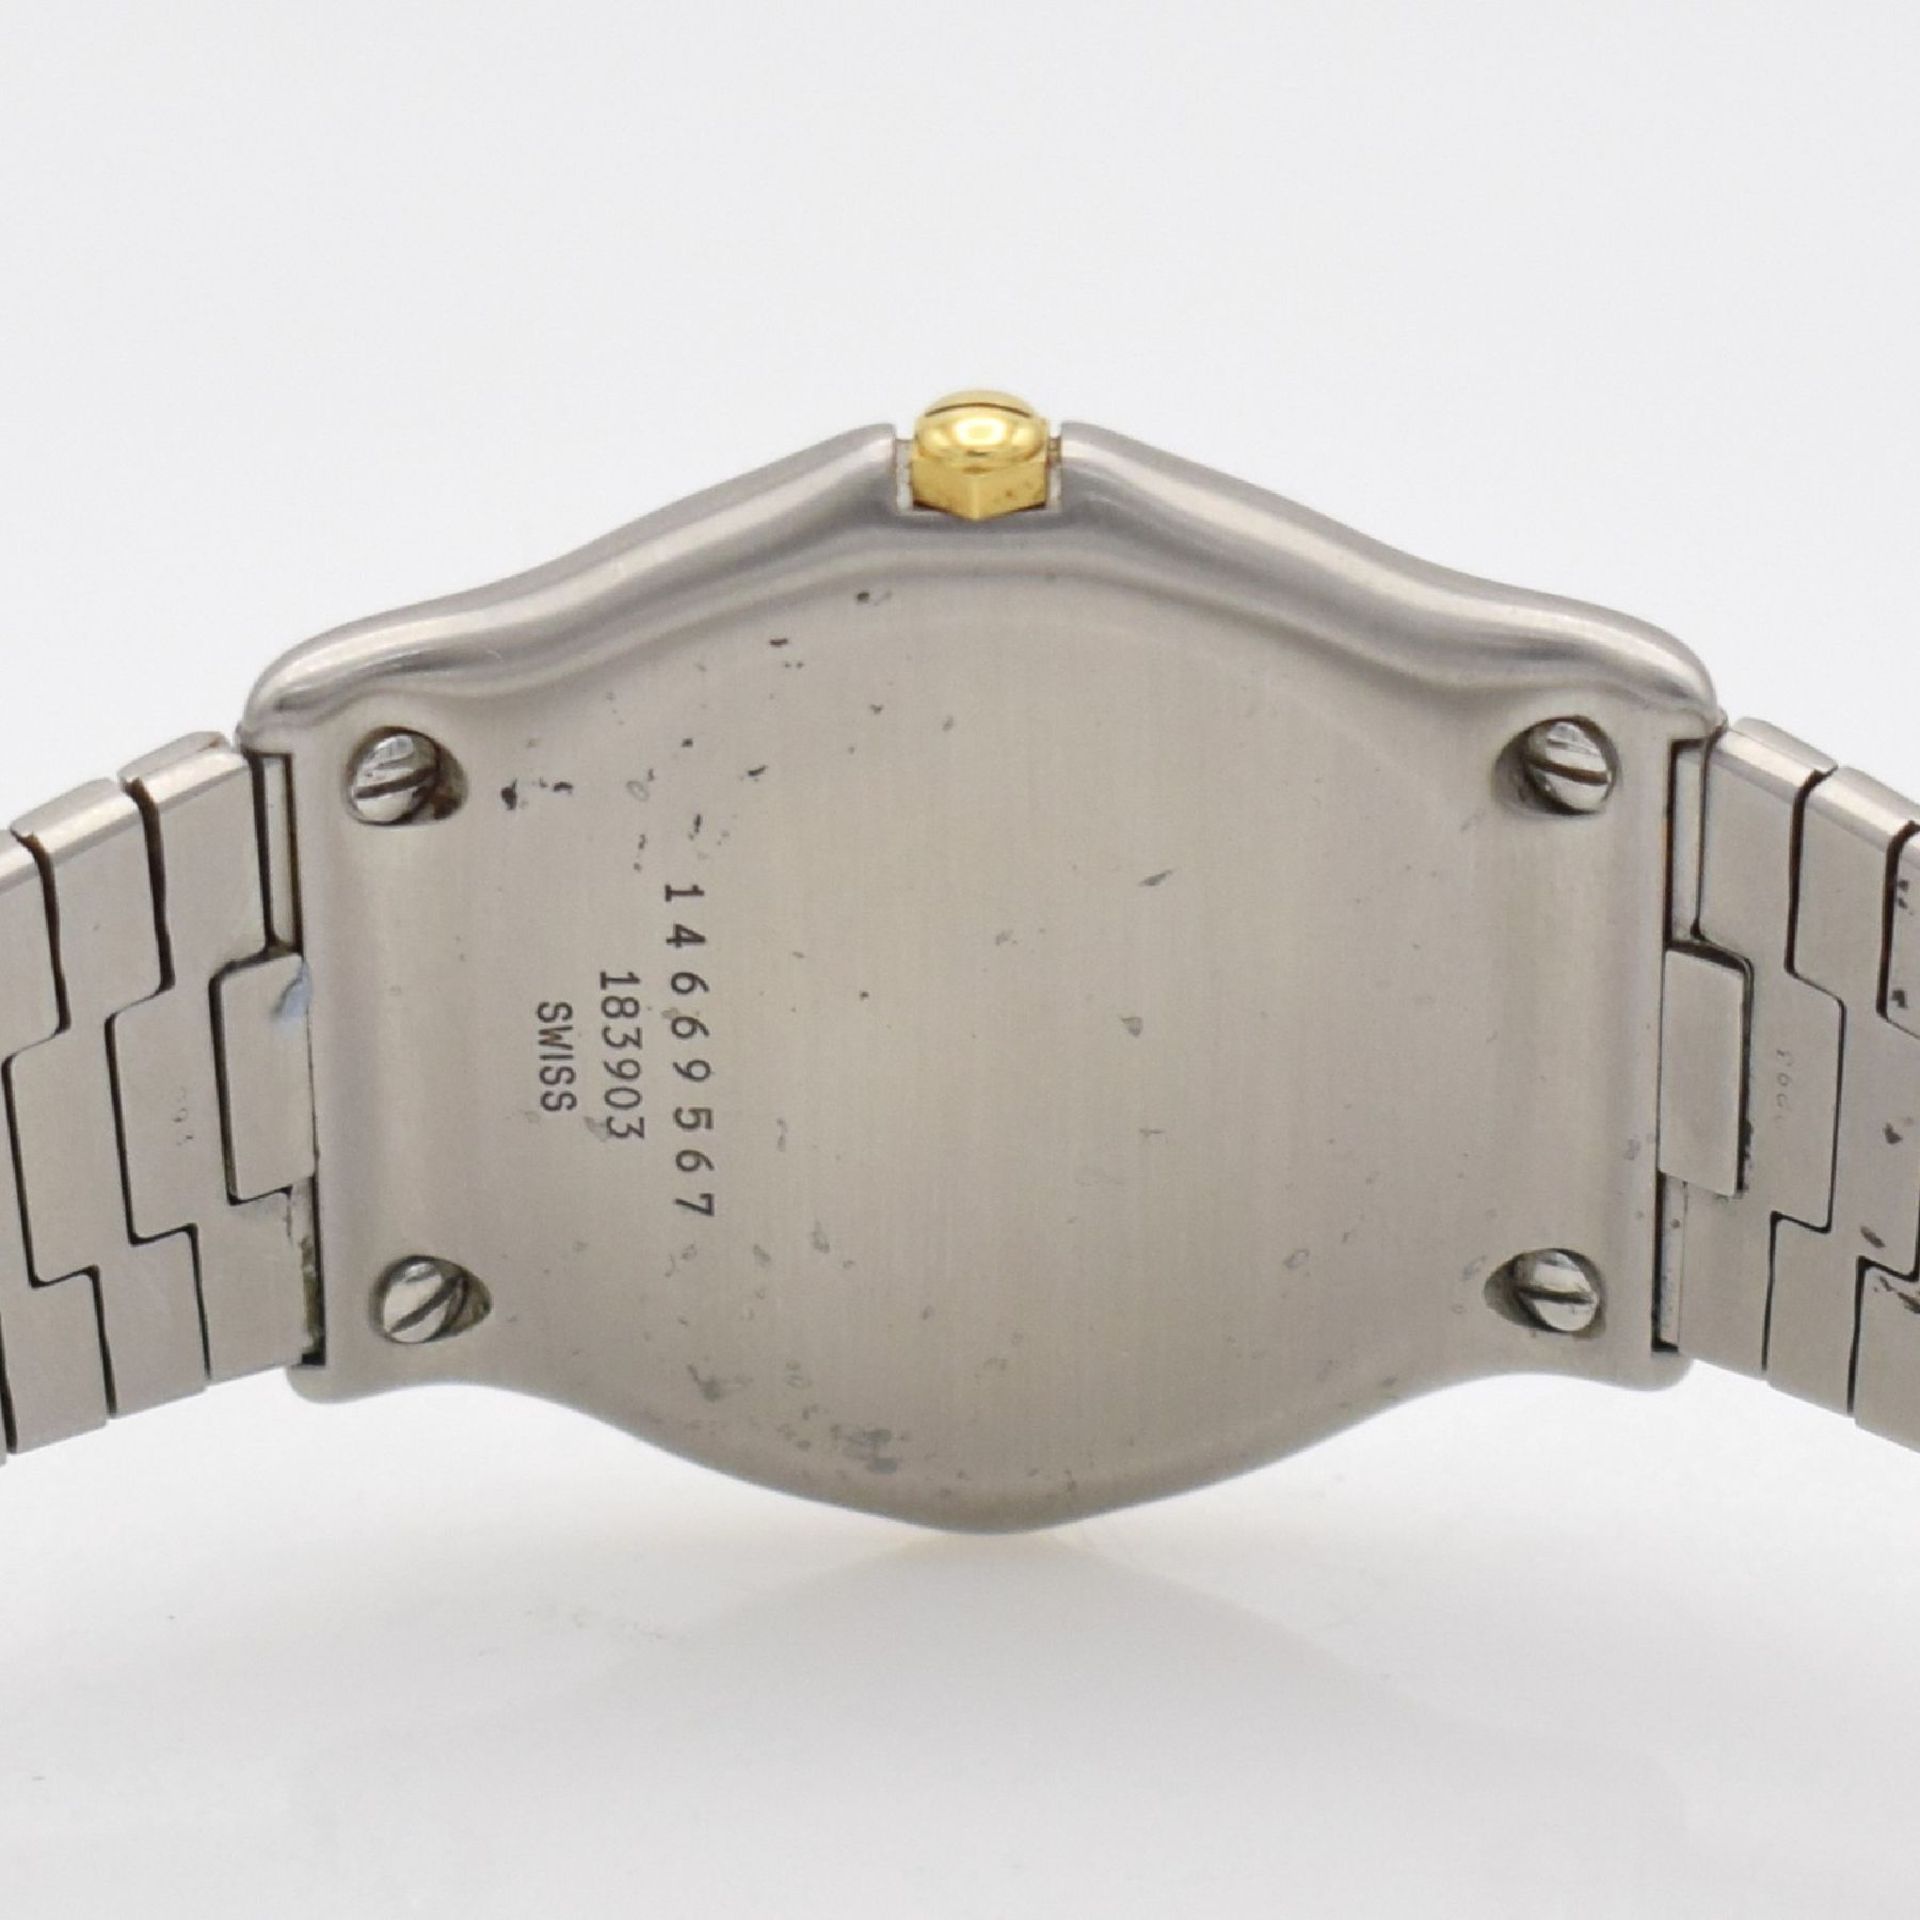 EBEL Sport Classic Armbanduhr in Stahl/Gold, Schweiz um 1995, quartz, Monocoque-Geh. Ref. 183903, - Bild 6 aus 6